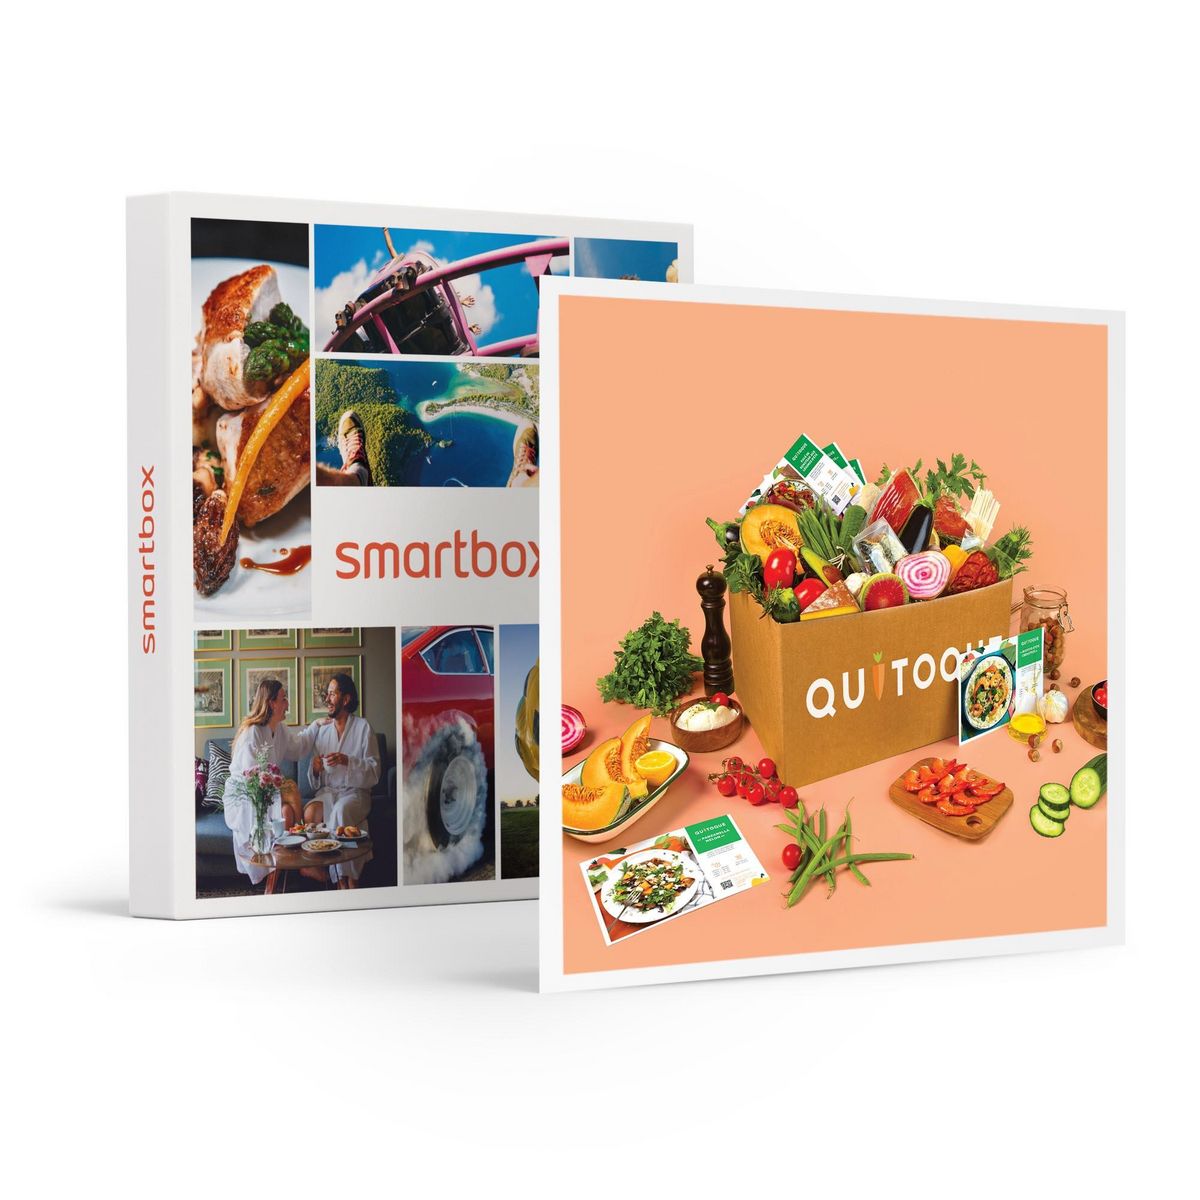 Smartbox 2 repas Quitoque au choix à cuisiner pour 2, livrés à domicile - Coffret Cadeau Gastronomie